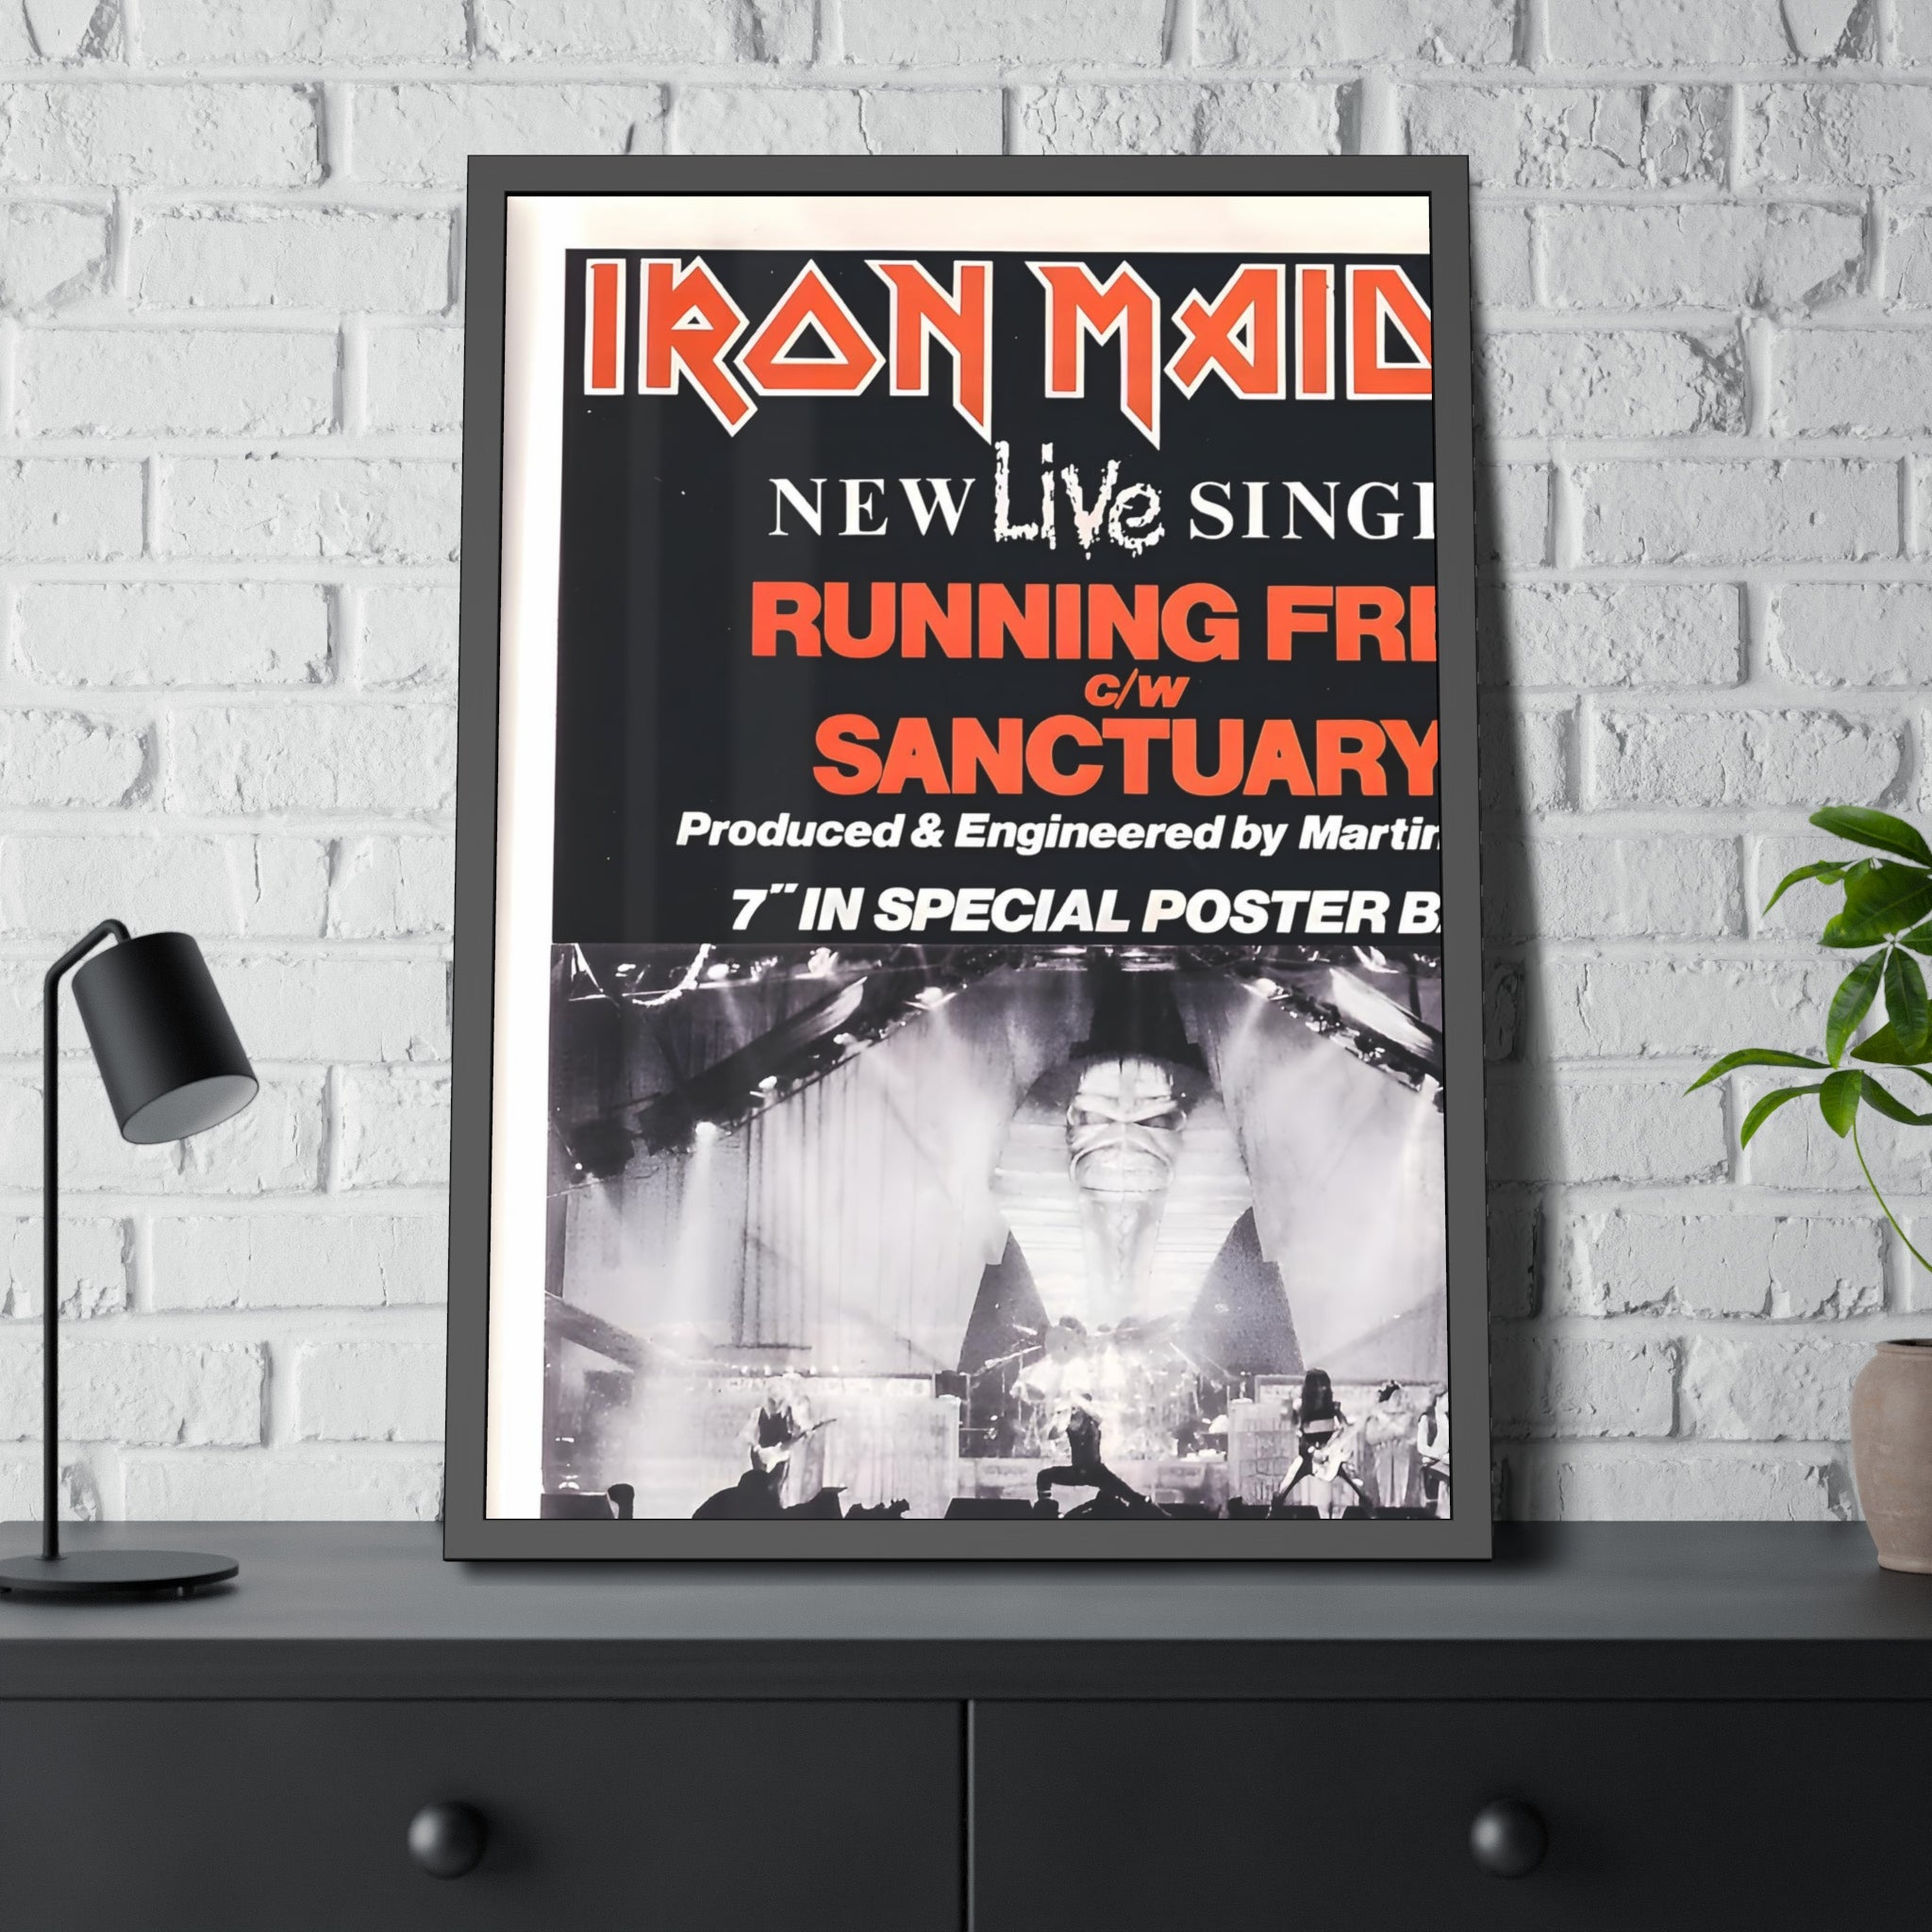 Iron Maiden Concert Poster II